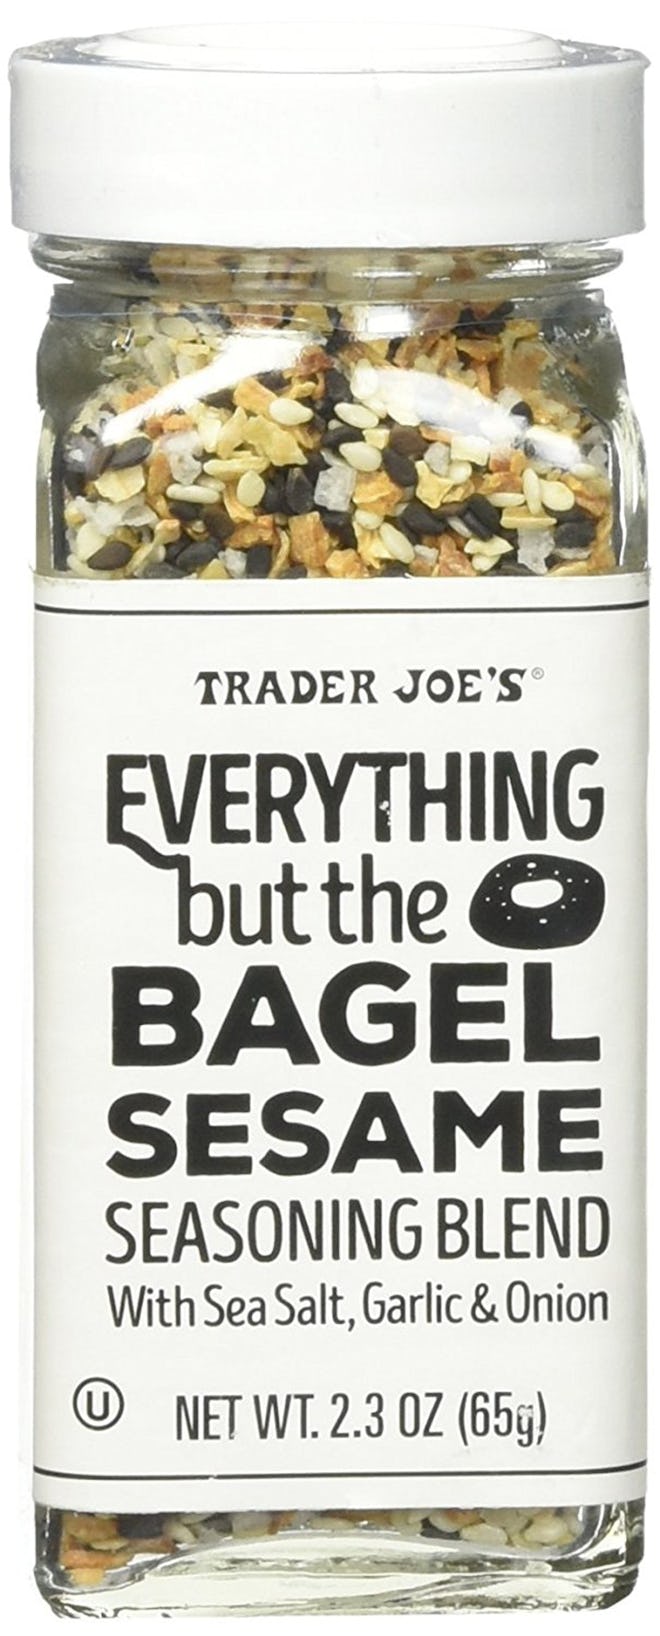 Trader Joe's Everything But Bagel Sesame Seasoning